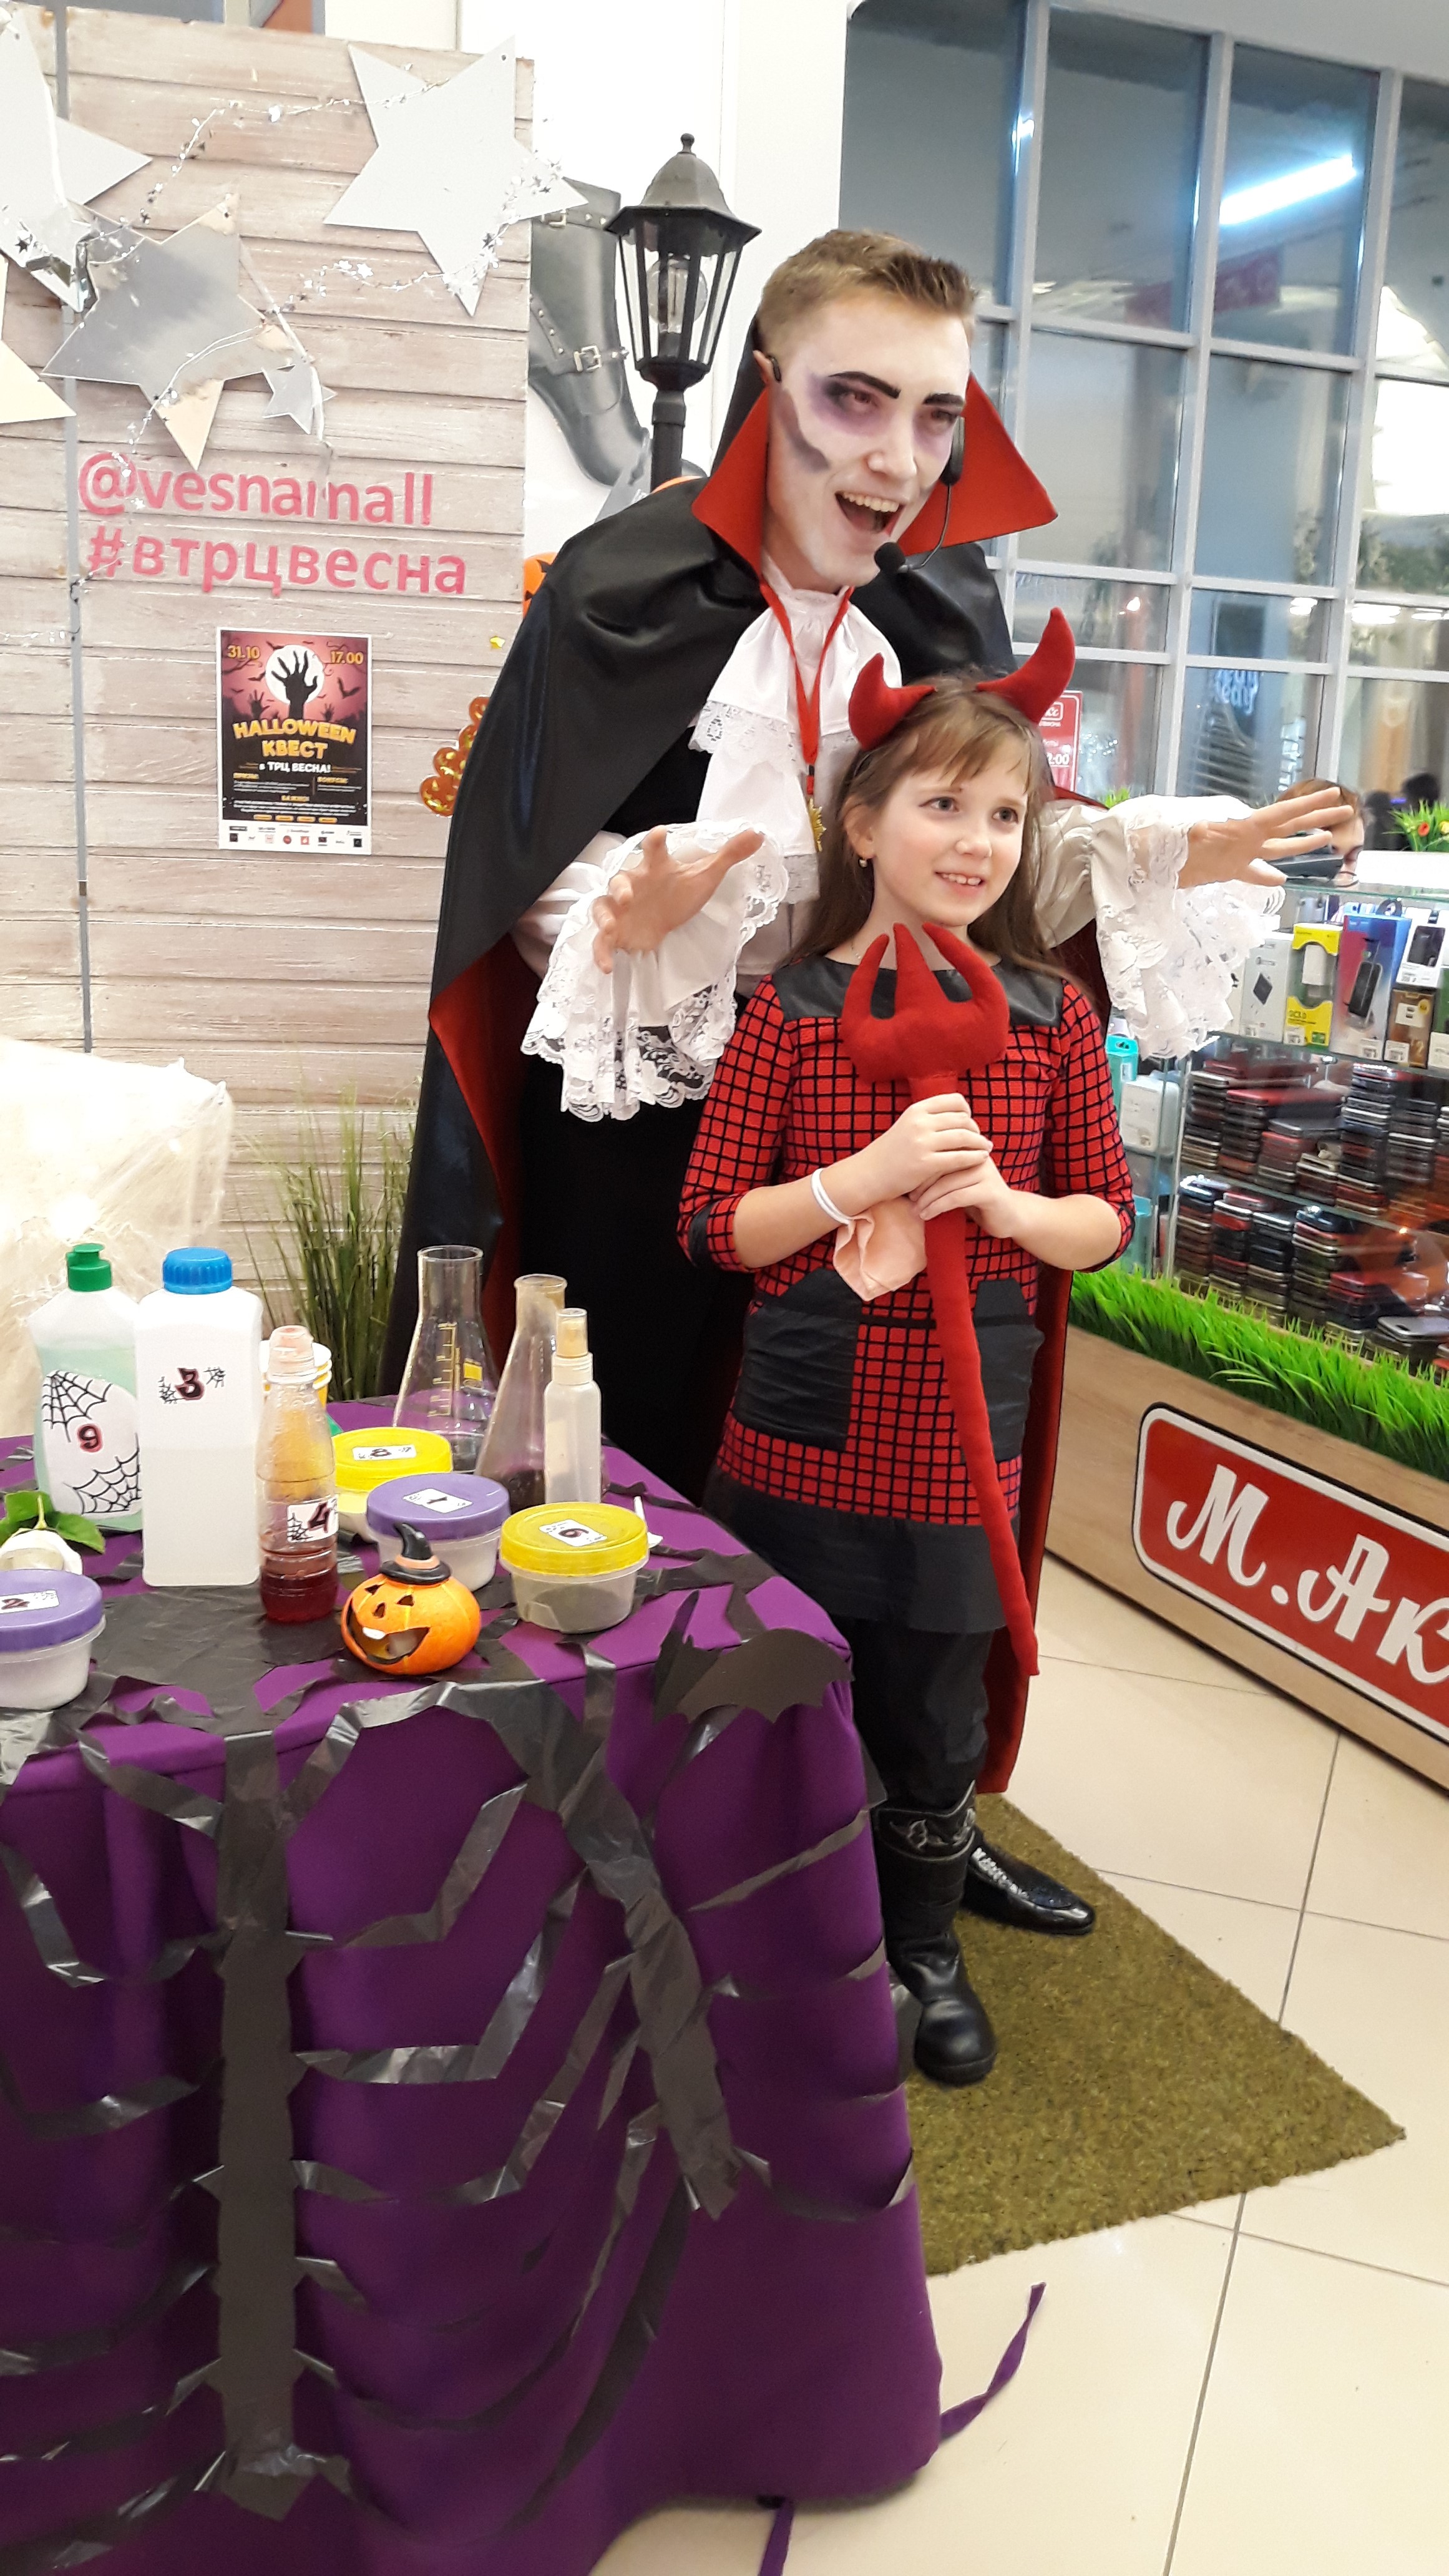  31 октября мы провели  страшно выгодный Хеллоуин-квест! Гостей встречал Дракула с подарками на 50 000 рублей!